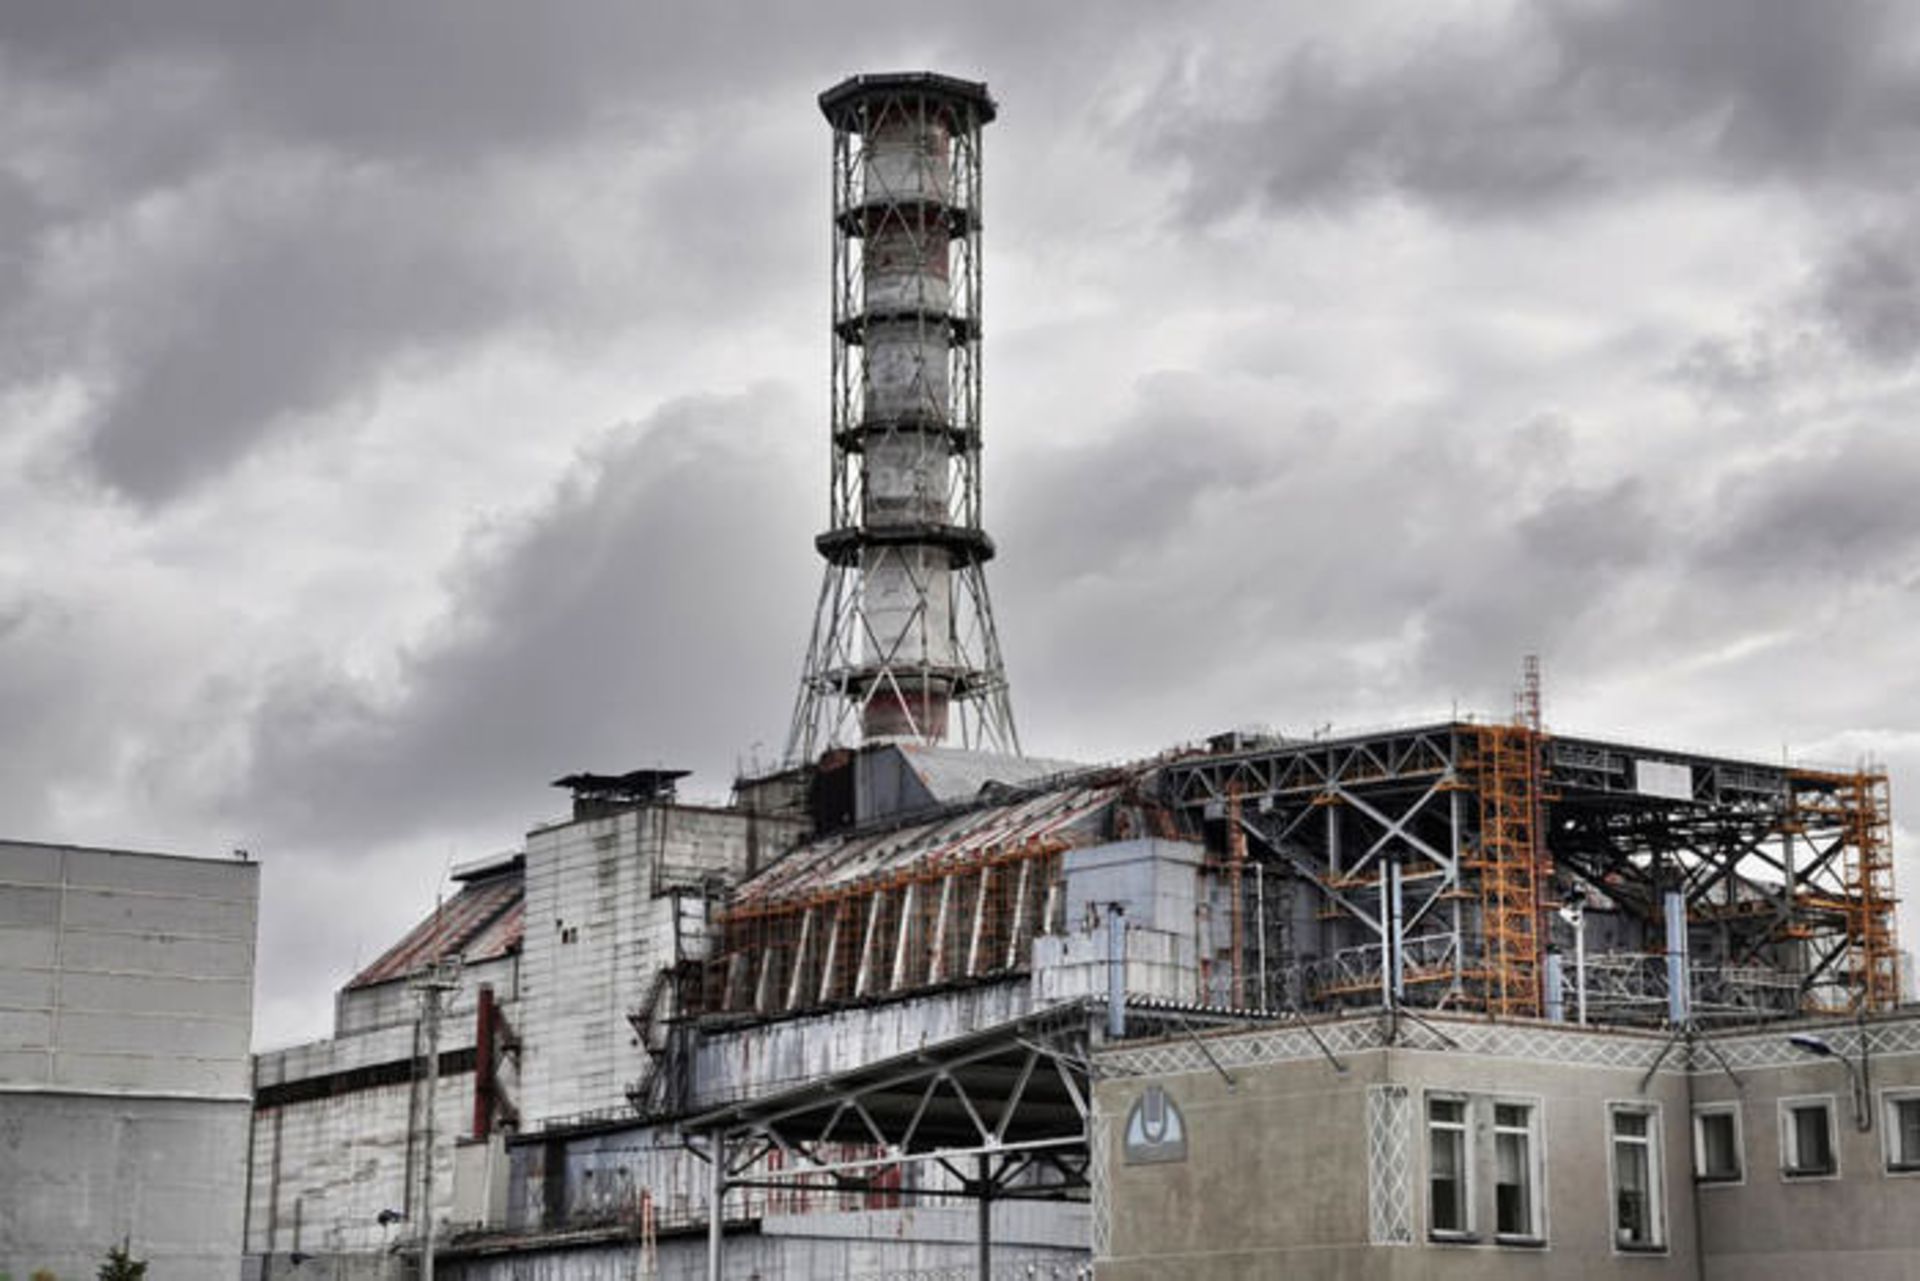 مرجع متخصصين ايران چرنوبيل / Chernobyl